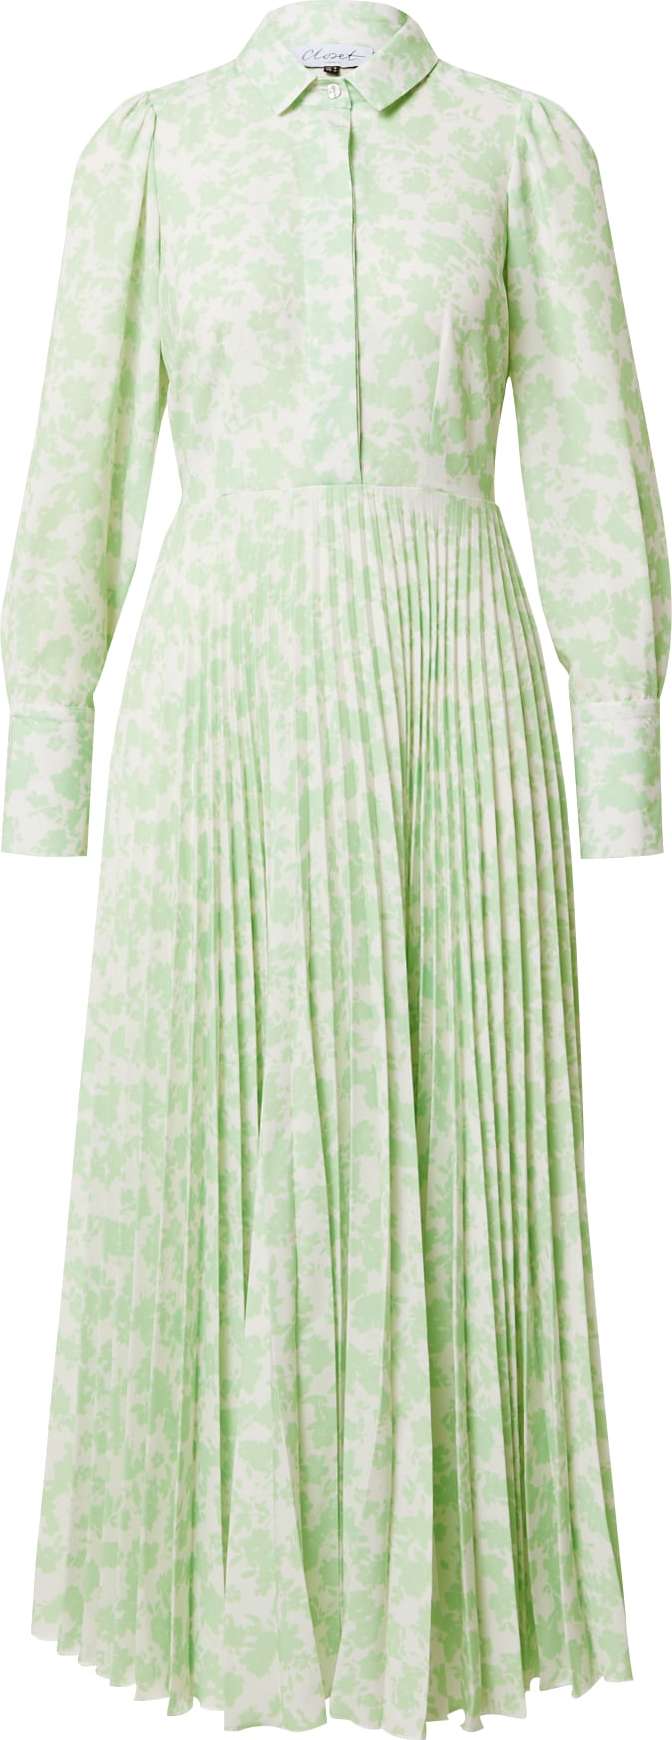 Closet London Košilové šaty bílá / světle zelená